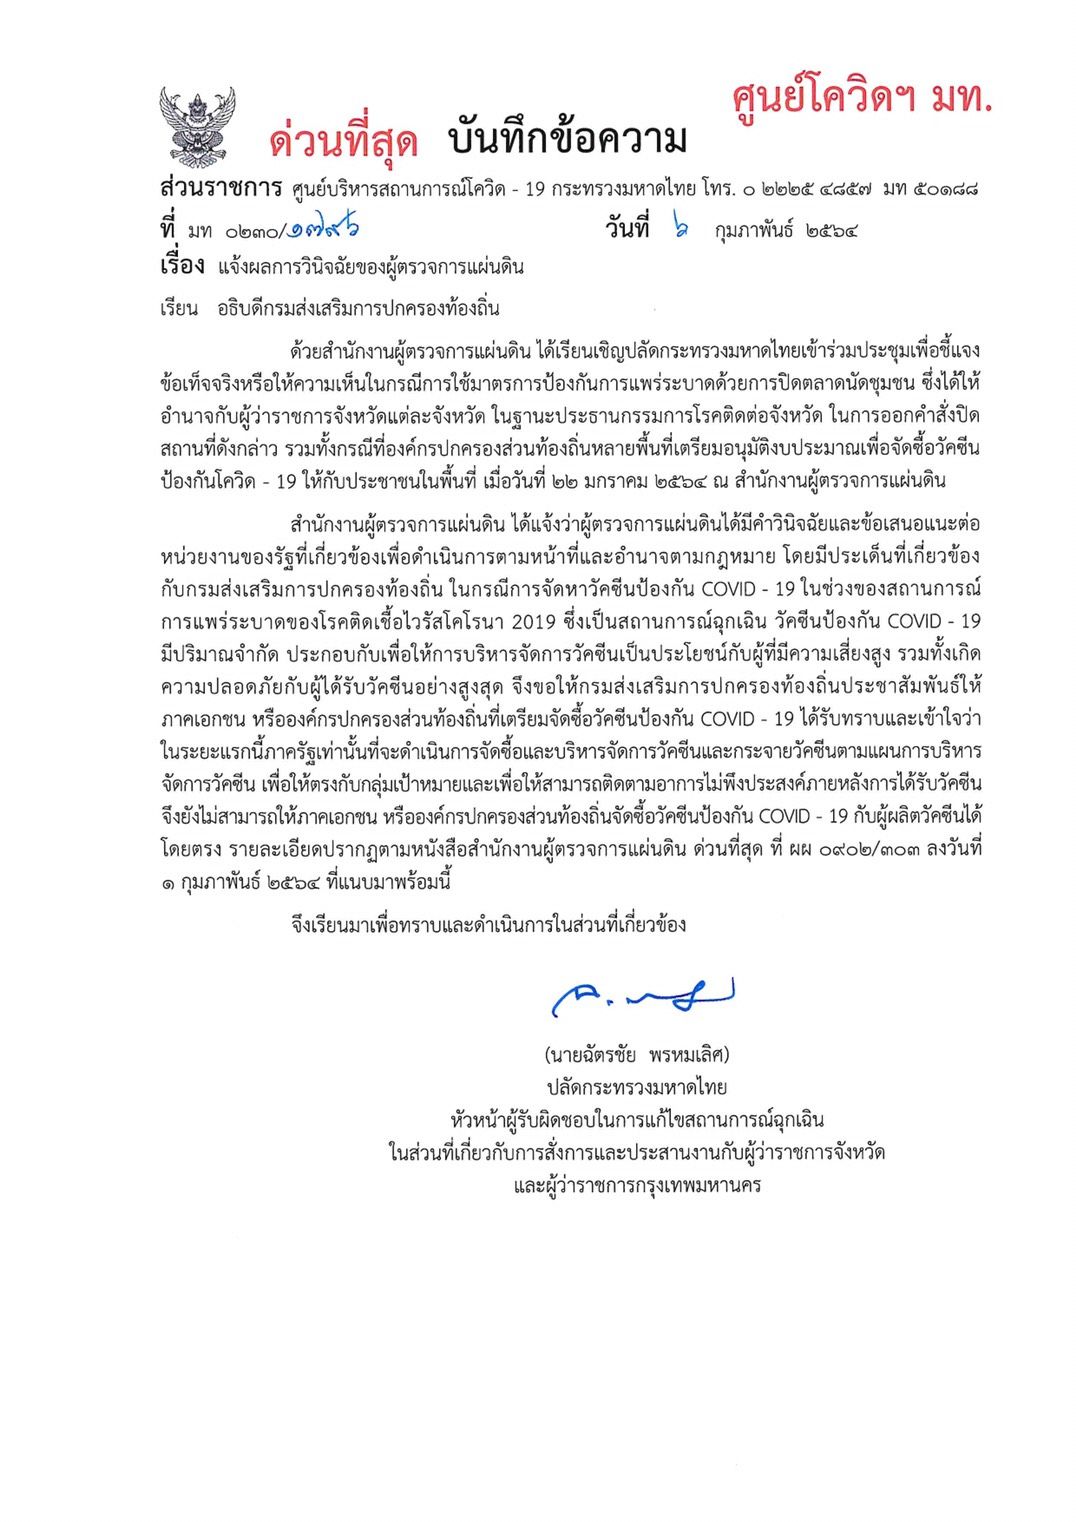 ศูนย์โควิด มหาดไทย ผู้ตรวจการแผ่นดิน วัคซีน  6038.jpg